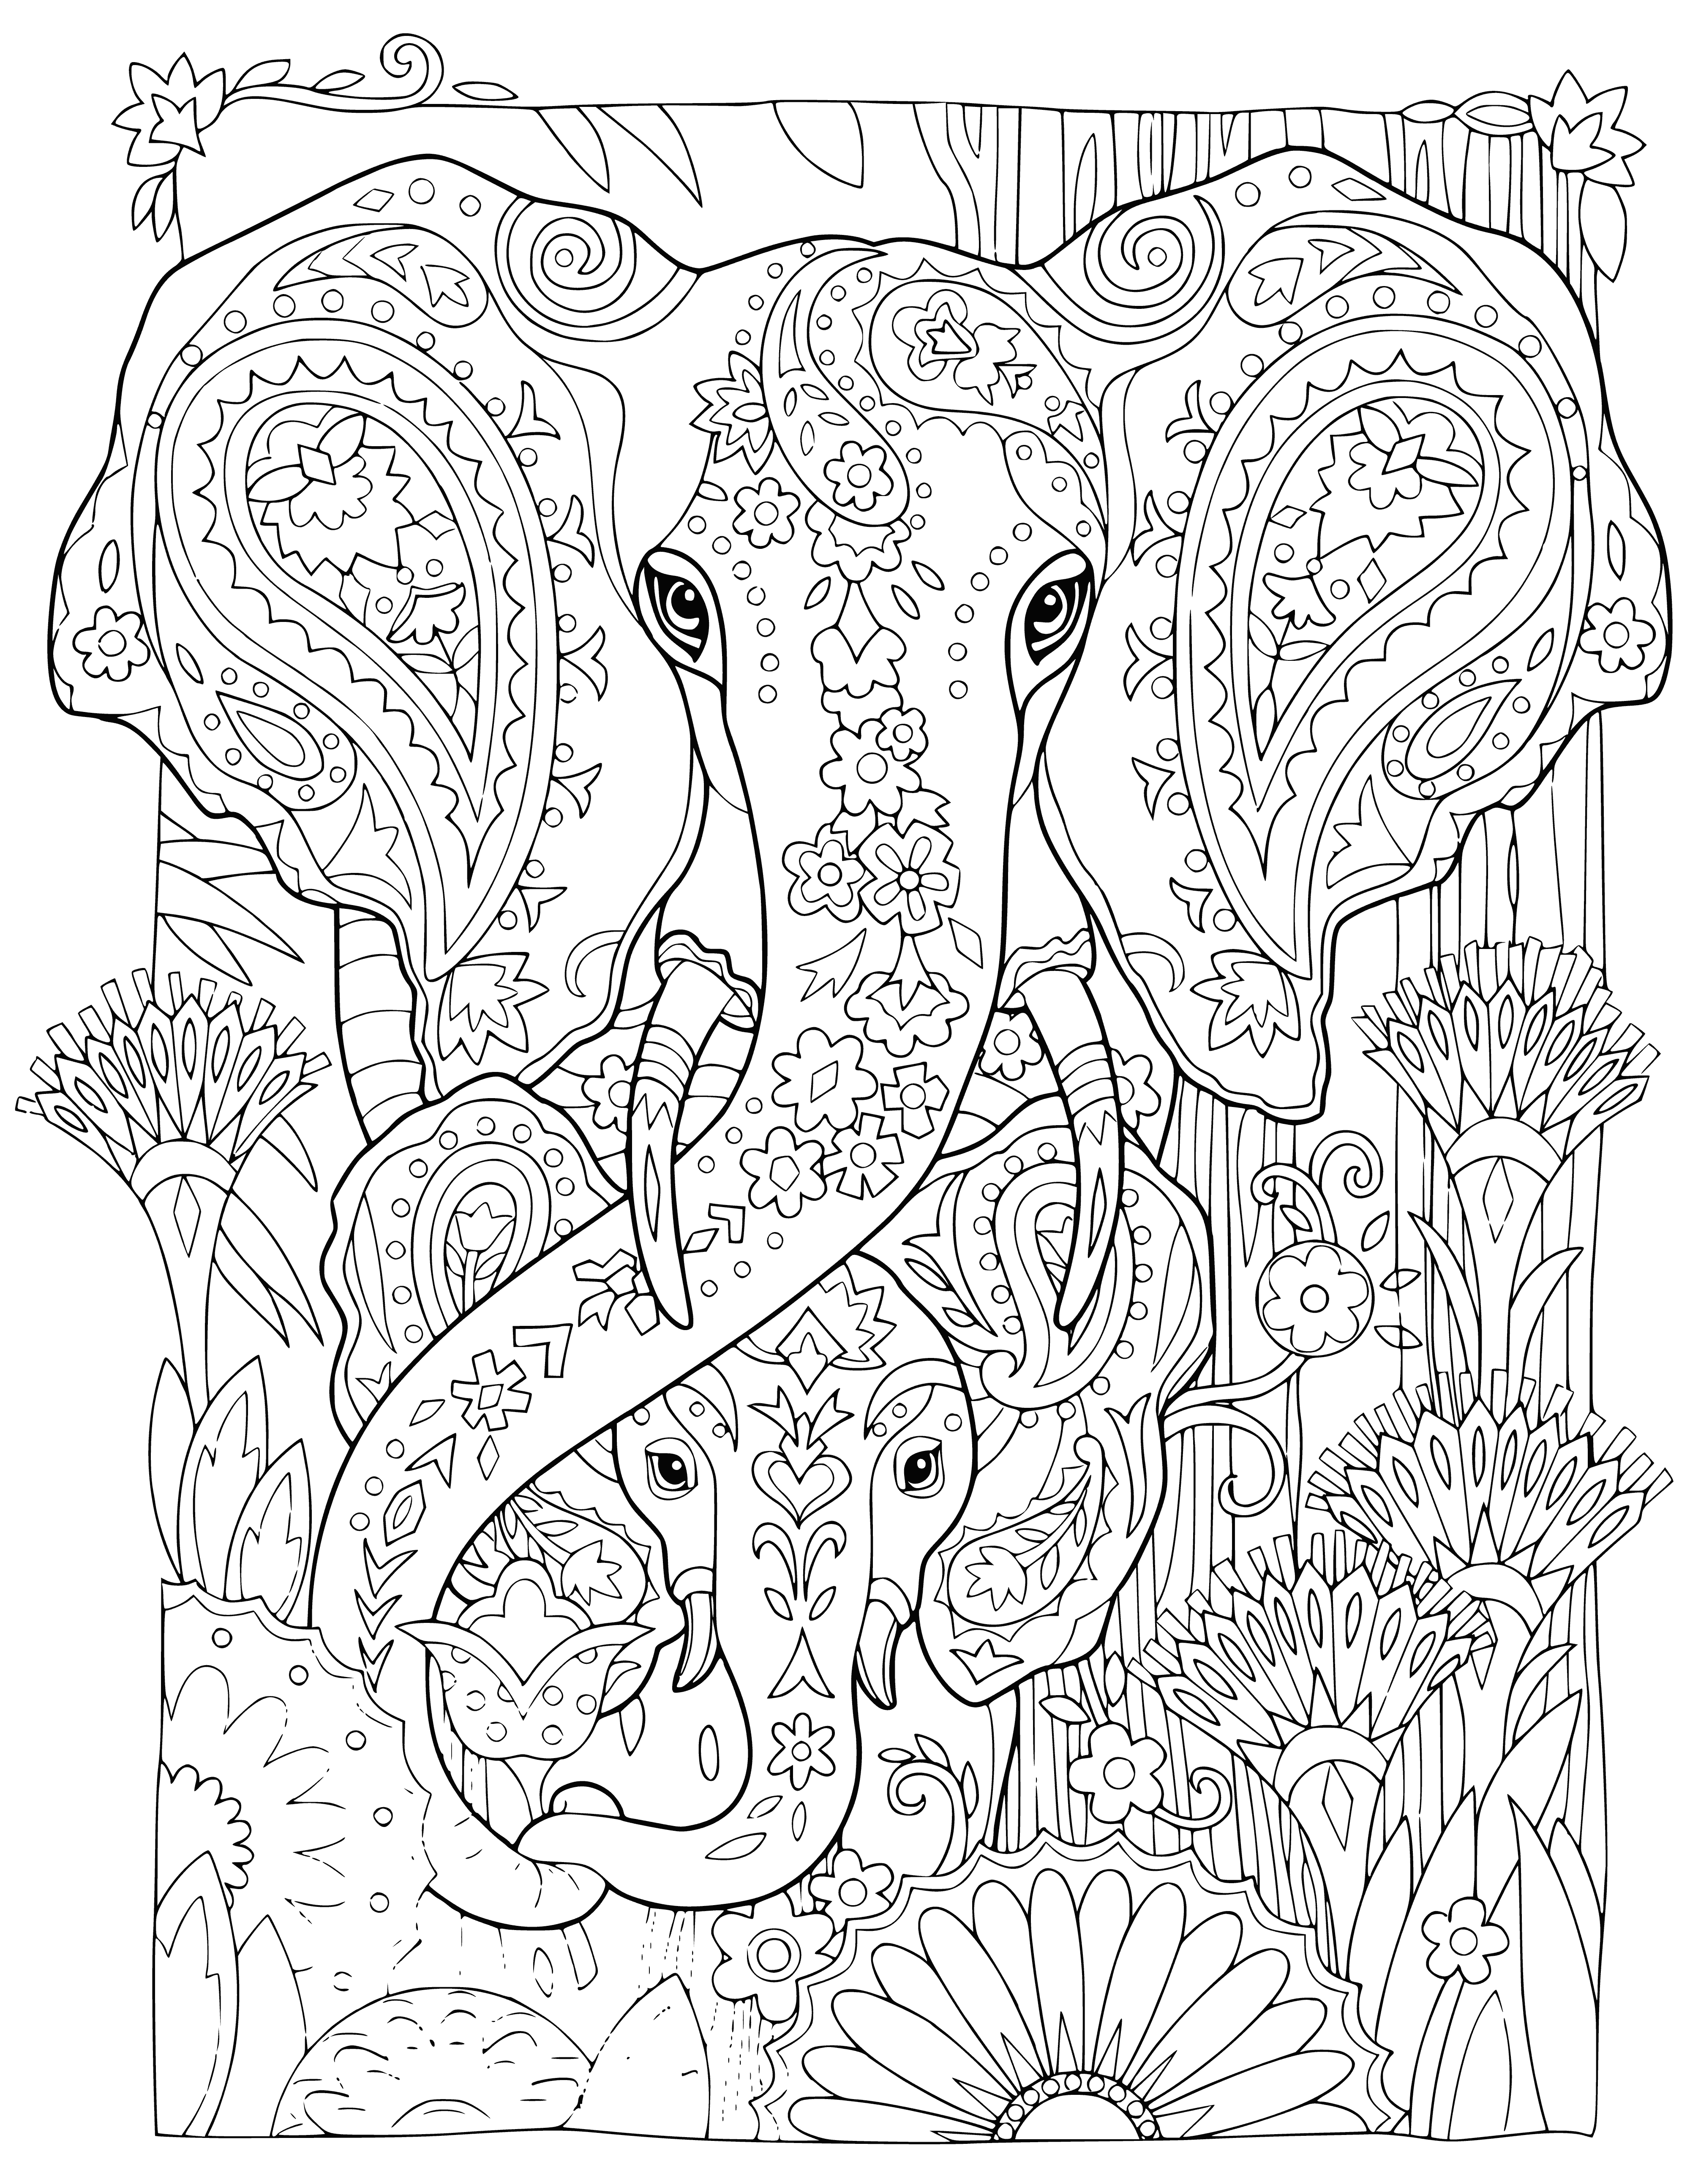 Elefant und Elefantenbaby Malseite